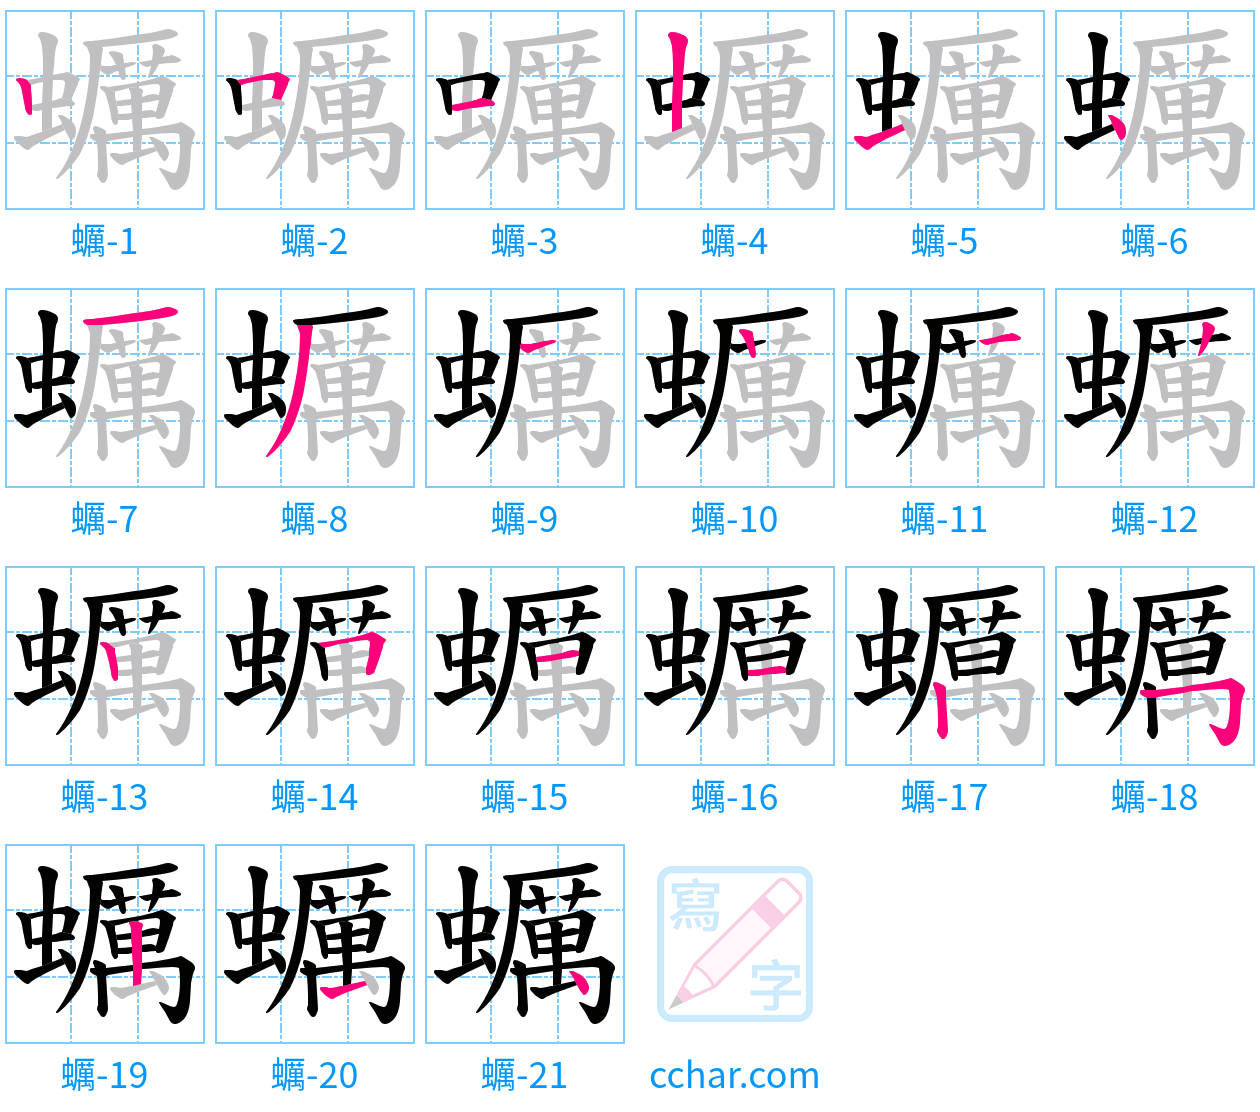 蠣 stroke order step-by-step diagram